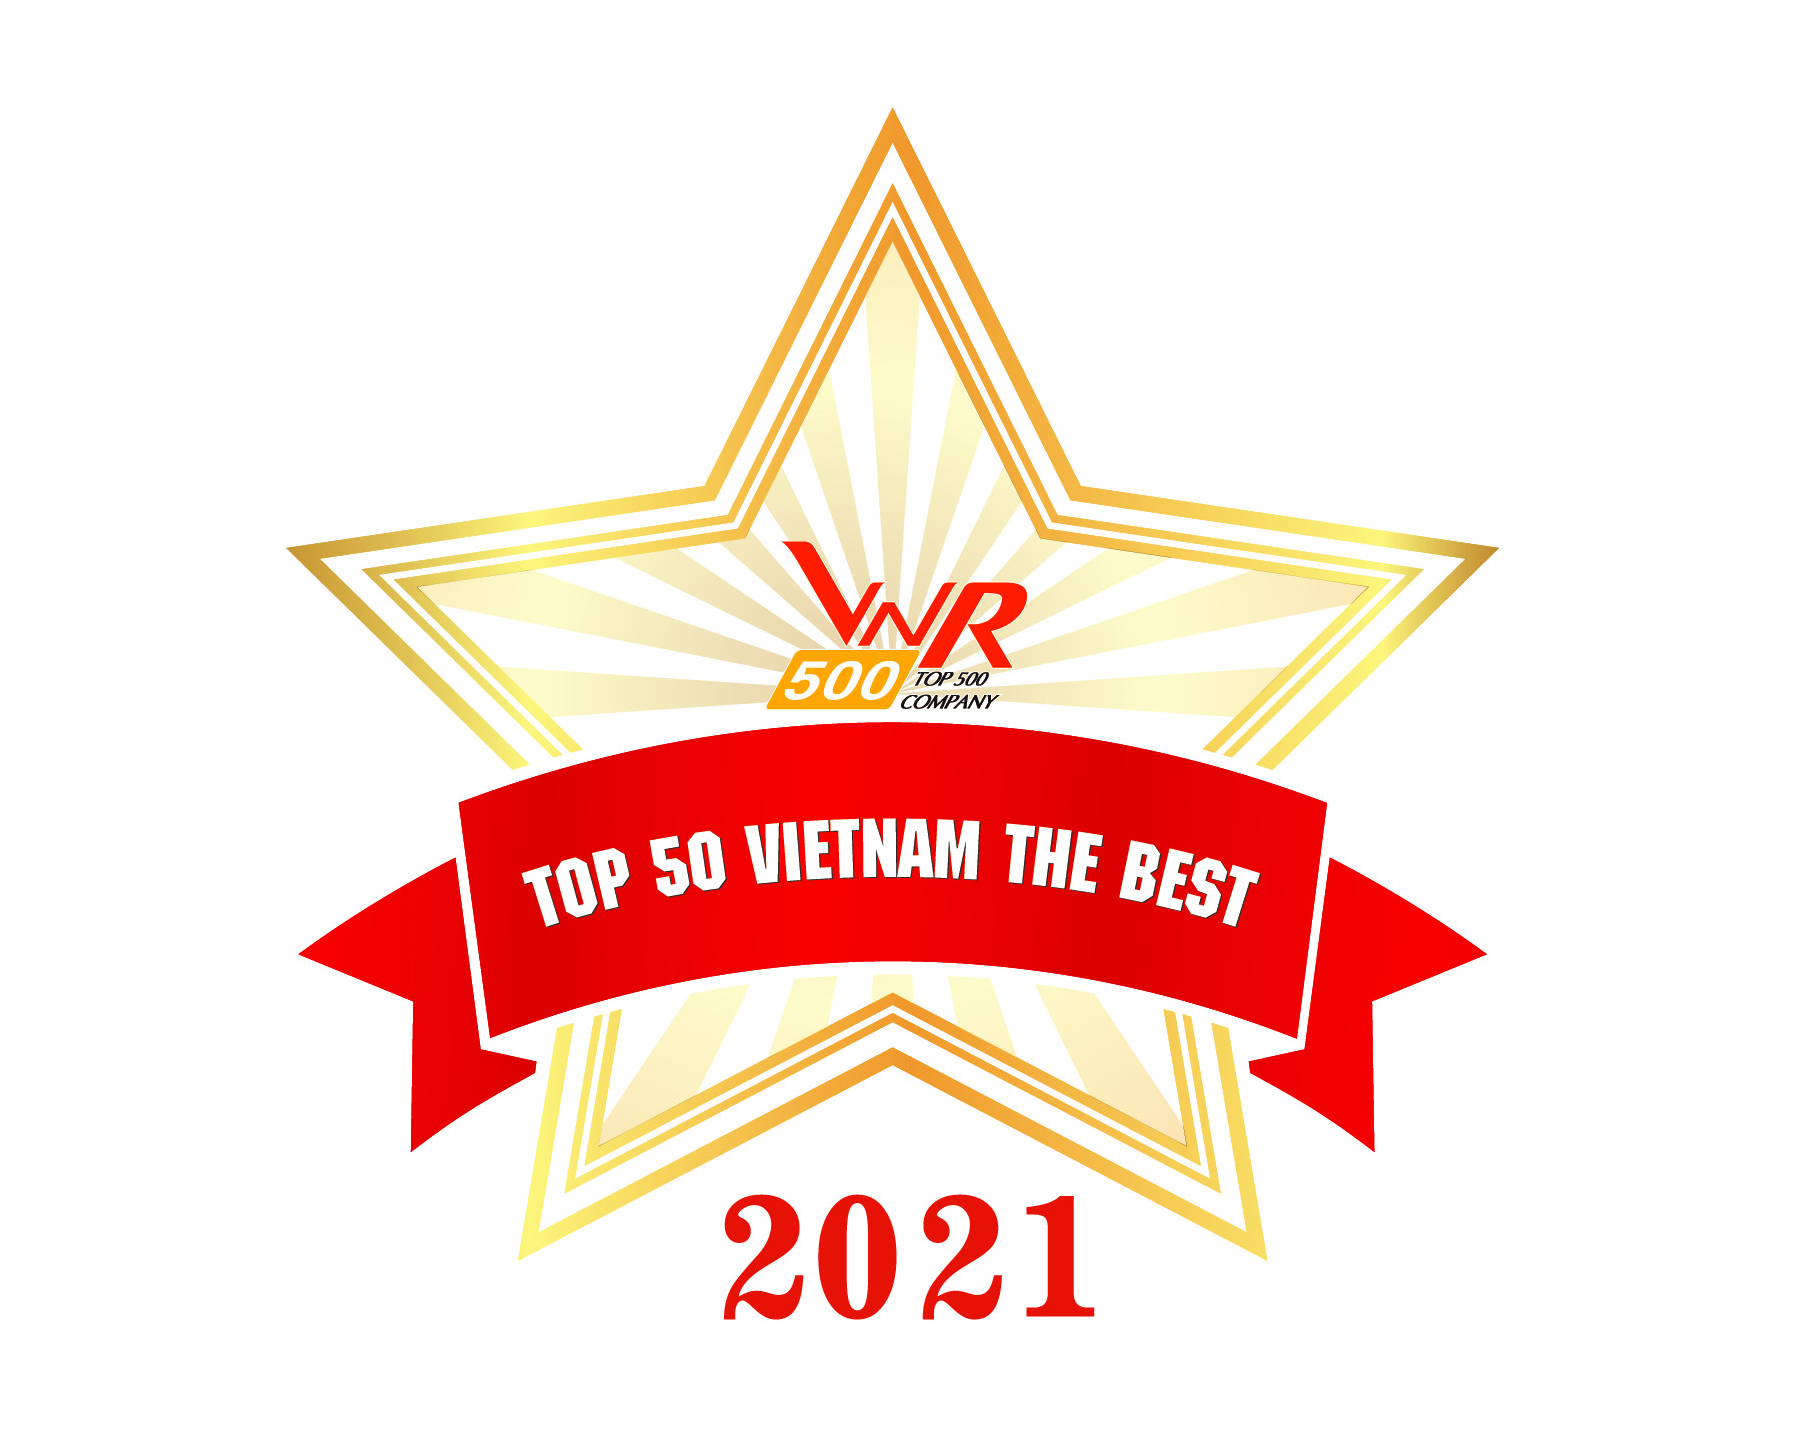 Top 50 Doanh nghiệp xuất sắc nhất Việt Nam năm 2021 - Top 50 Vietnam the Best